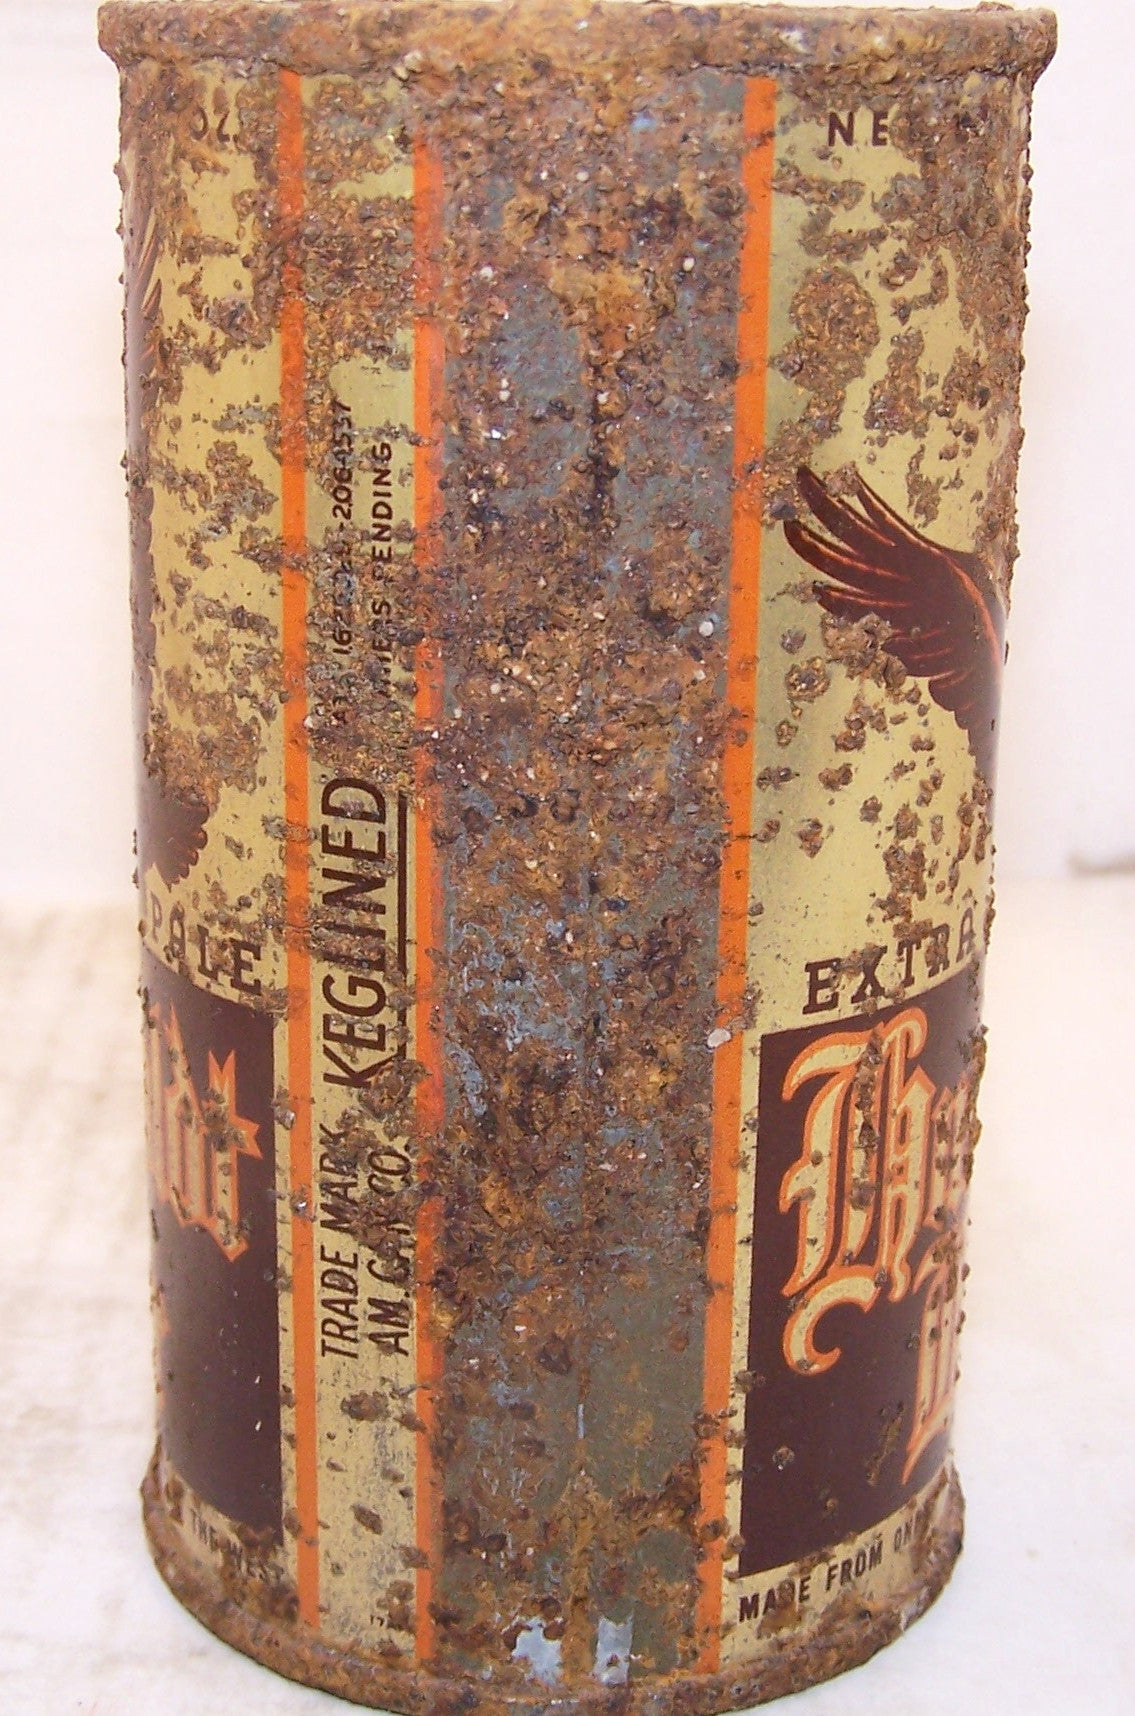 Humboldt Beer Lilek Page # 439. Grade 3 Dumper. Sold on 02/20/16